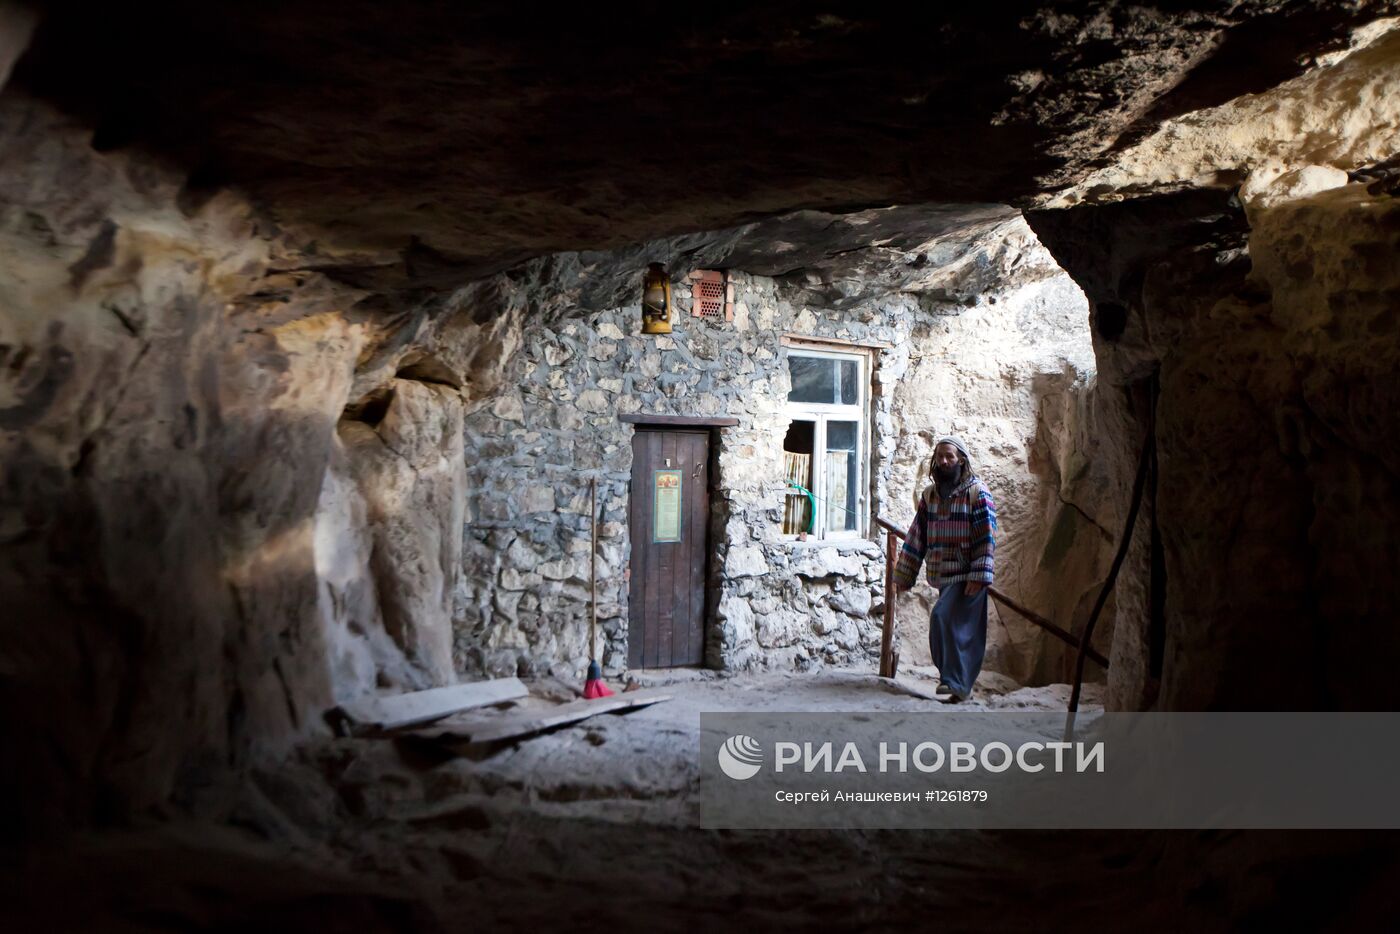 Пещерный монастырь Шулдан в Крыму